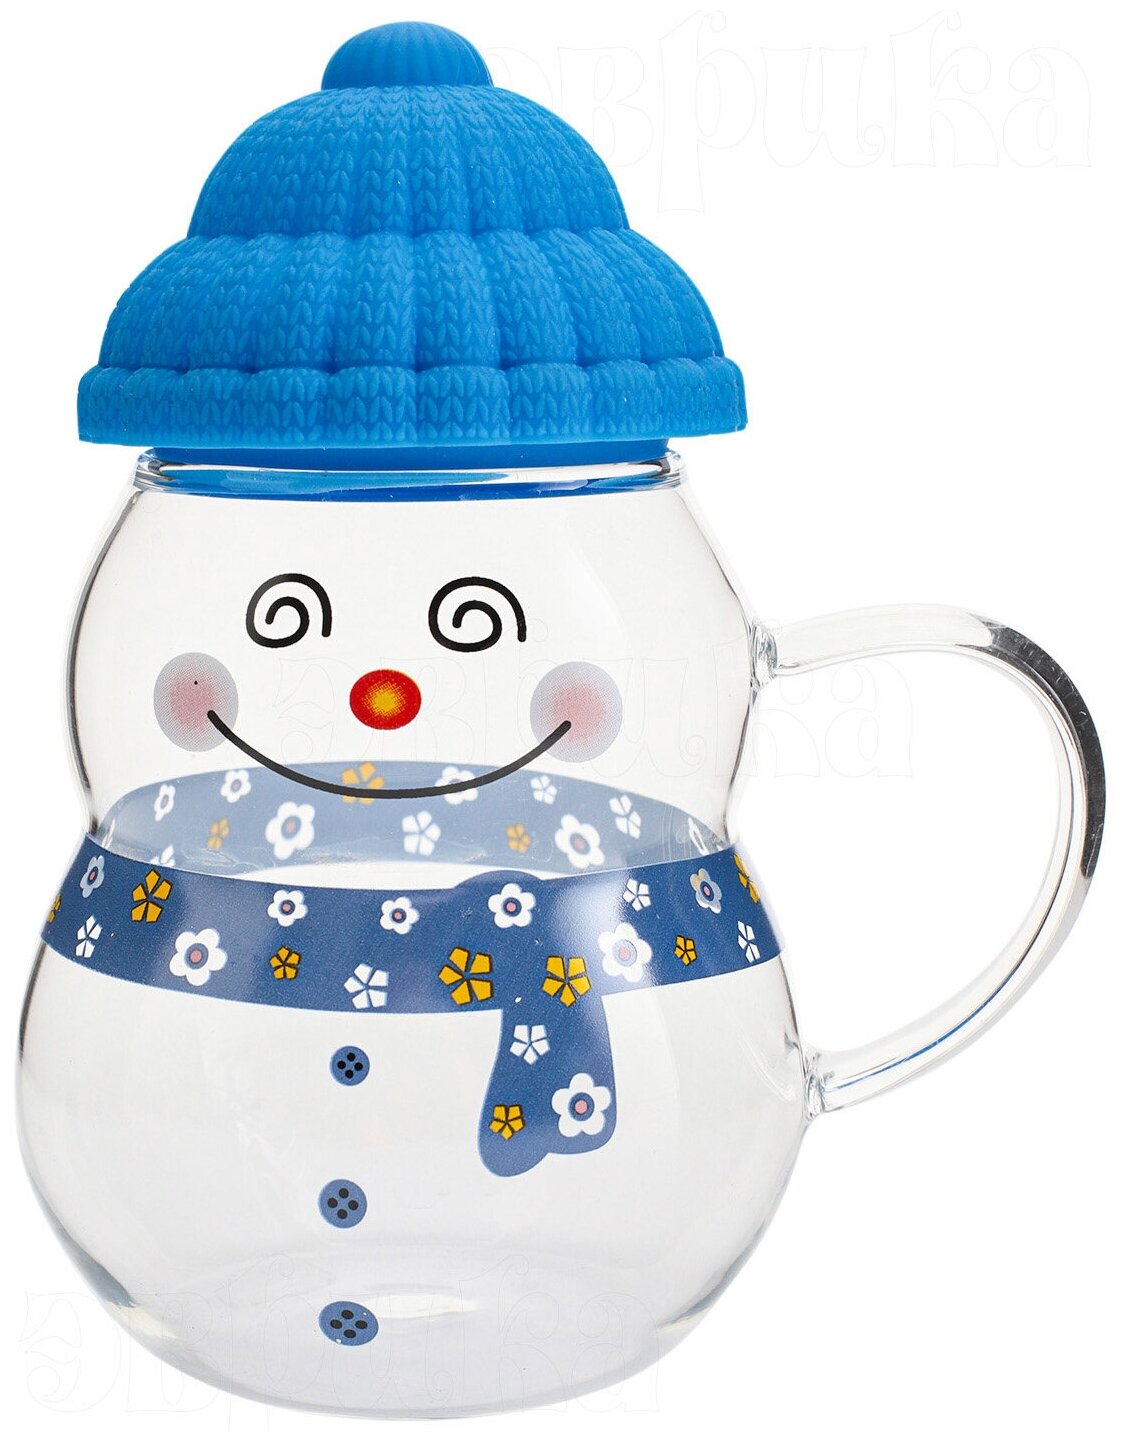 Кружка стеклянная Снеговик синий 450 мл, кружка с крышкой новогодняя, подарочная, символ года